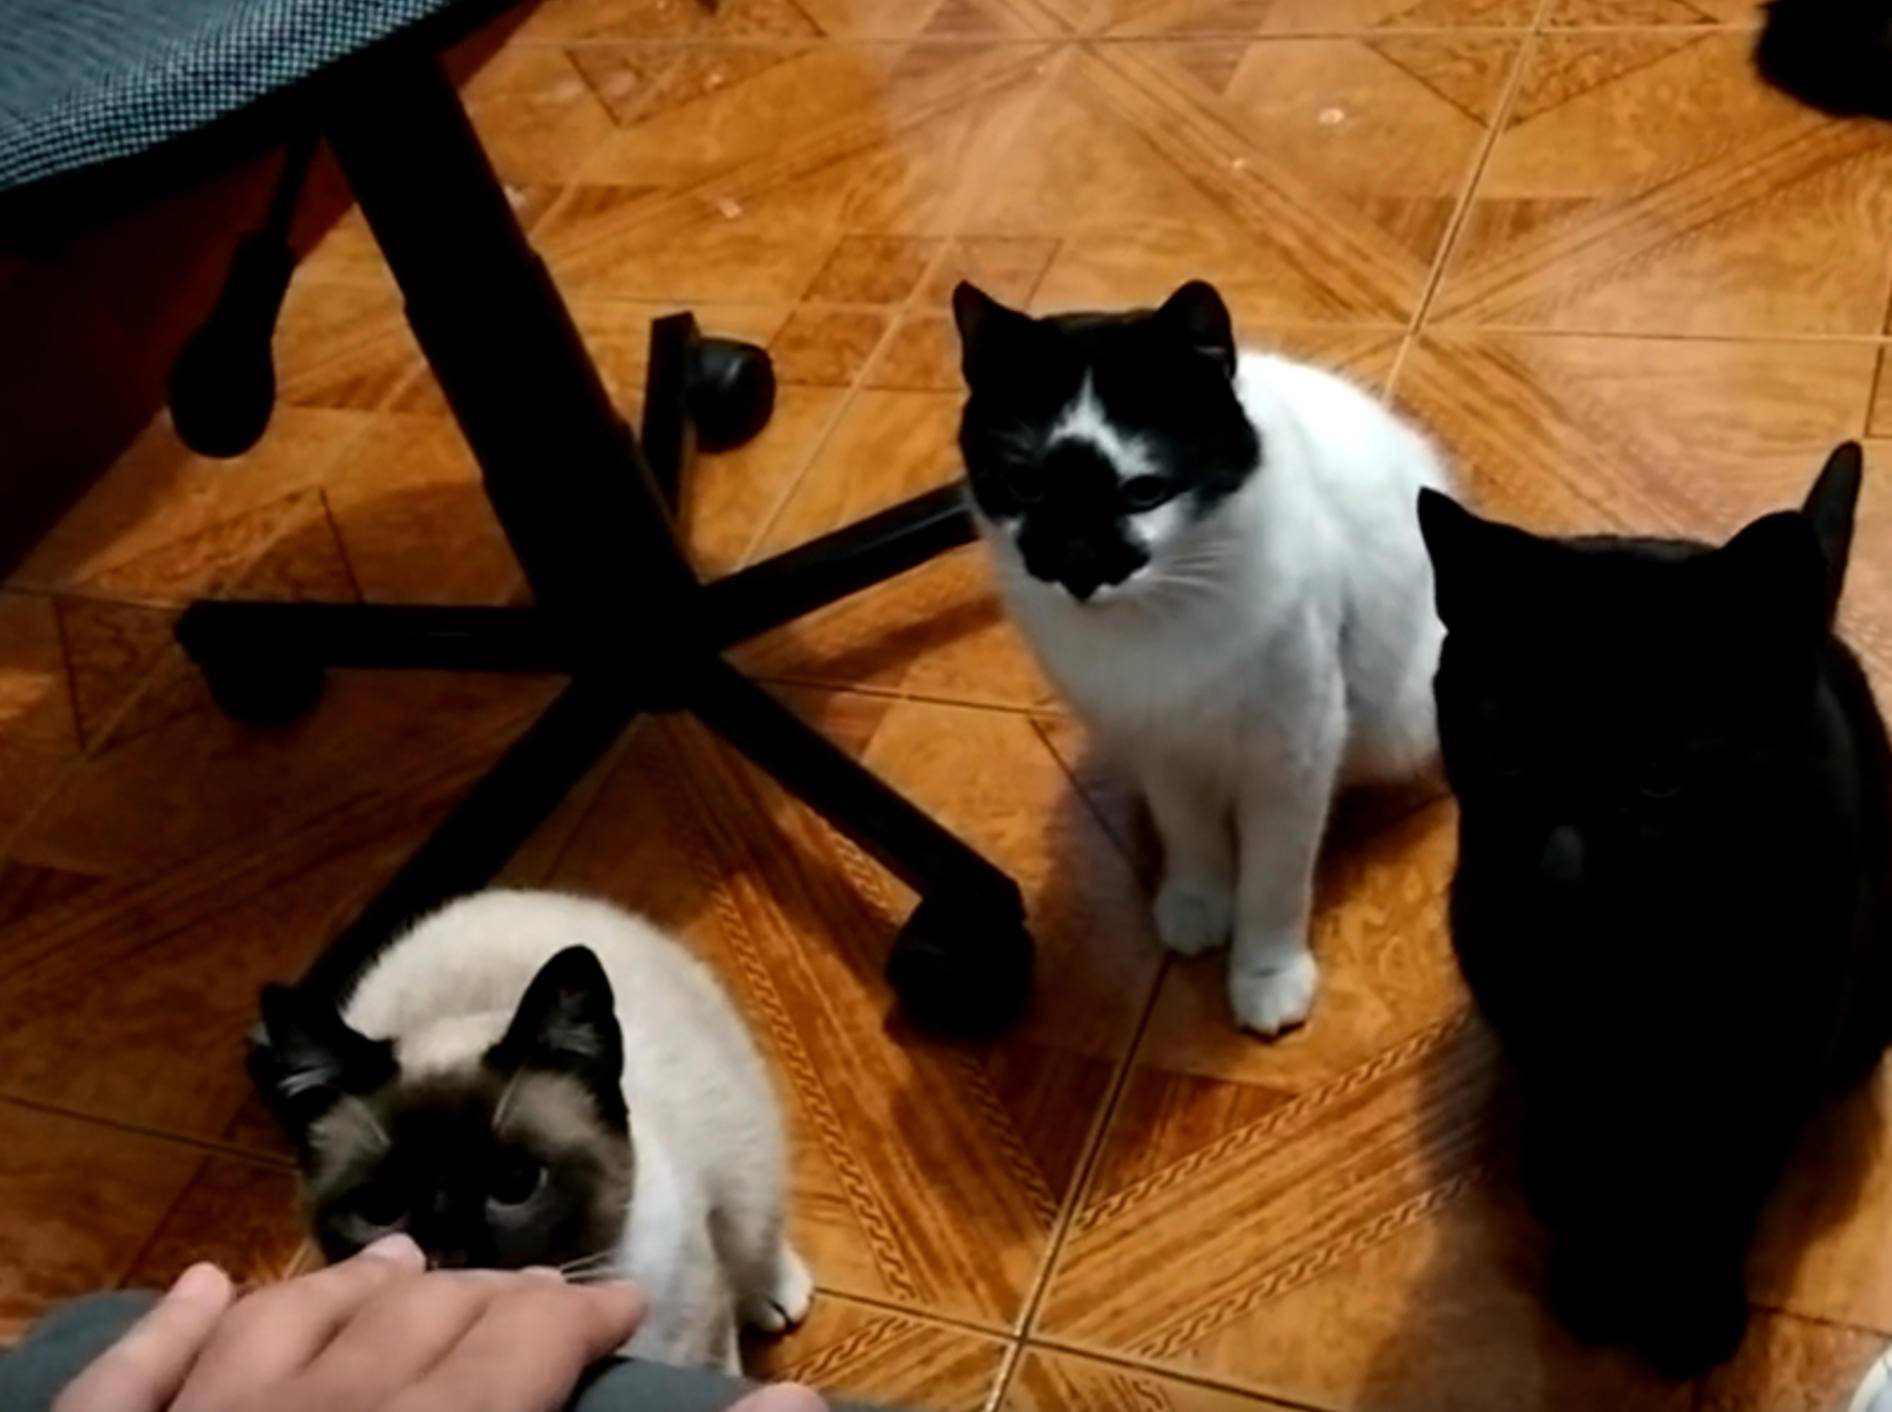 Katzen horchen auf: "Hört ihr dieses Geräusch auch?" – Bild: YouTube / The Six Cats Parade